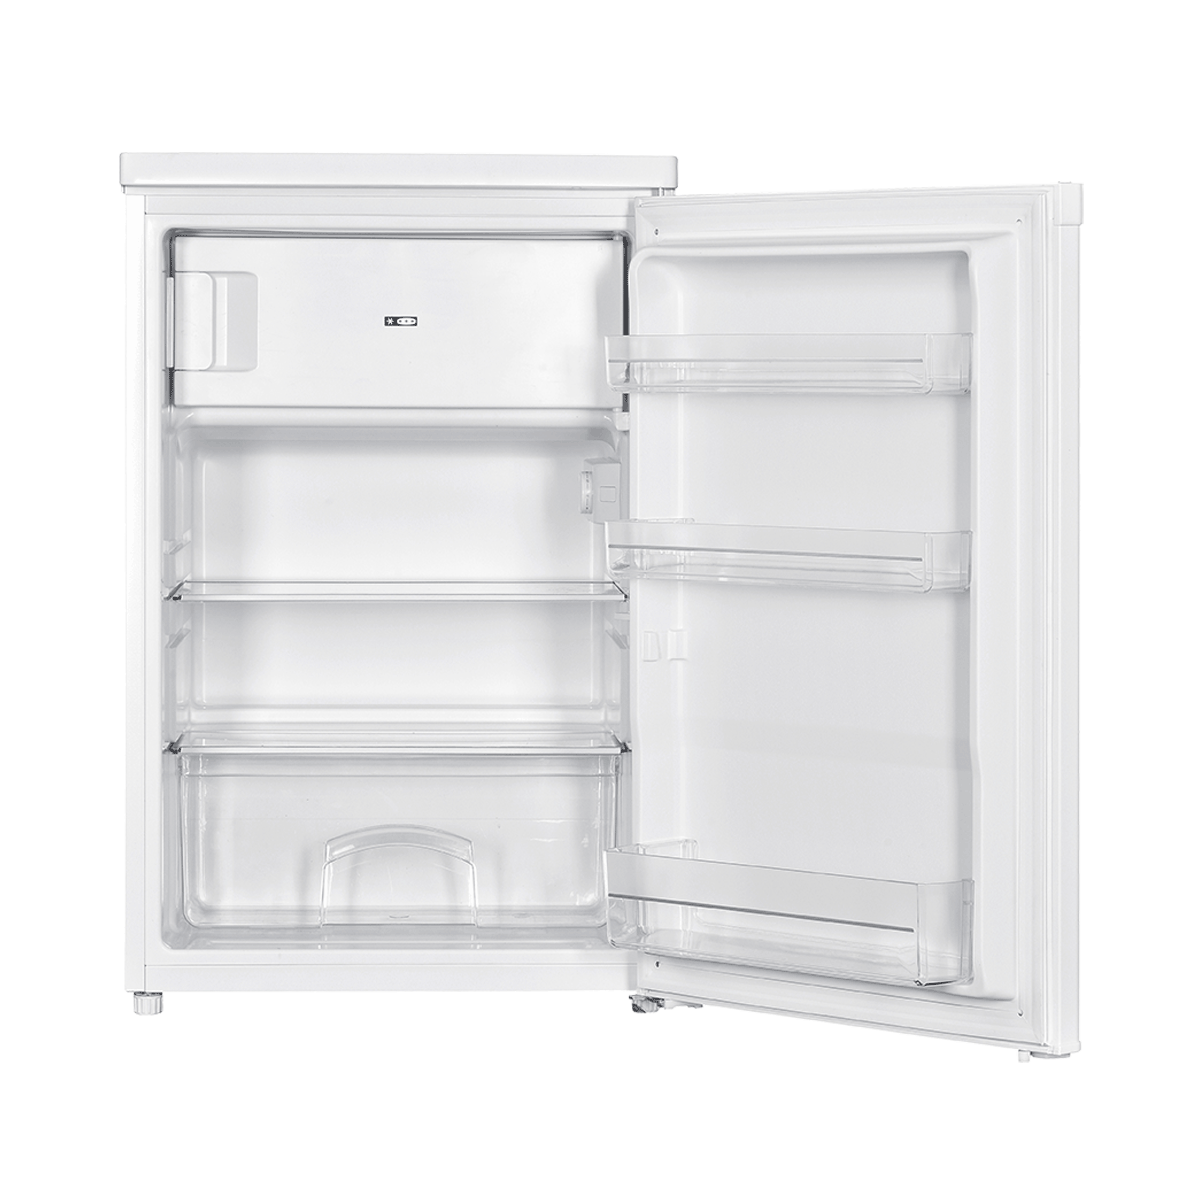 Refrigerator KS 1610 F 